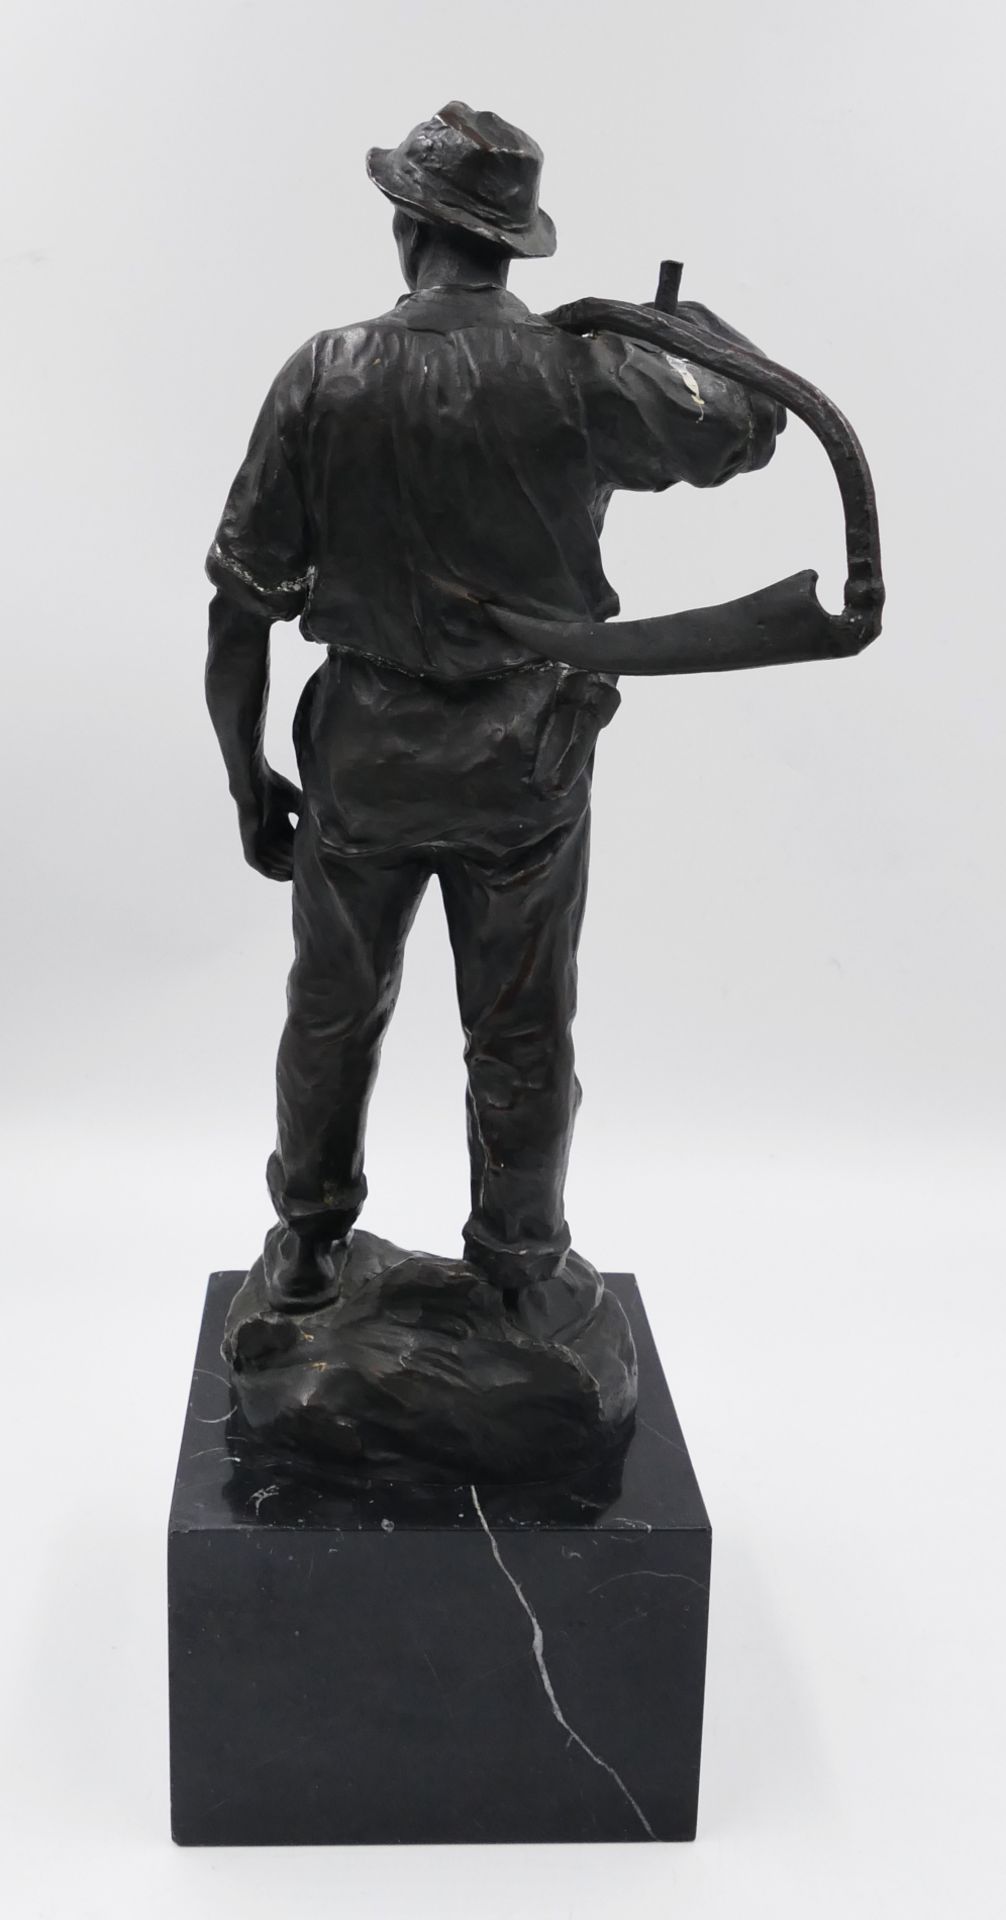 1 Bronzefigur rücks. bez. H. MÜLLER (wohl Hans M. 1873 Wien-1937 Ebd.) "Bauer mit Sense" ca. H 27,5c - Bild 4 aus 6